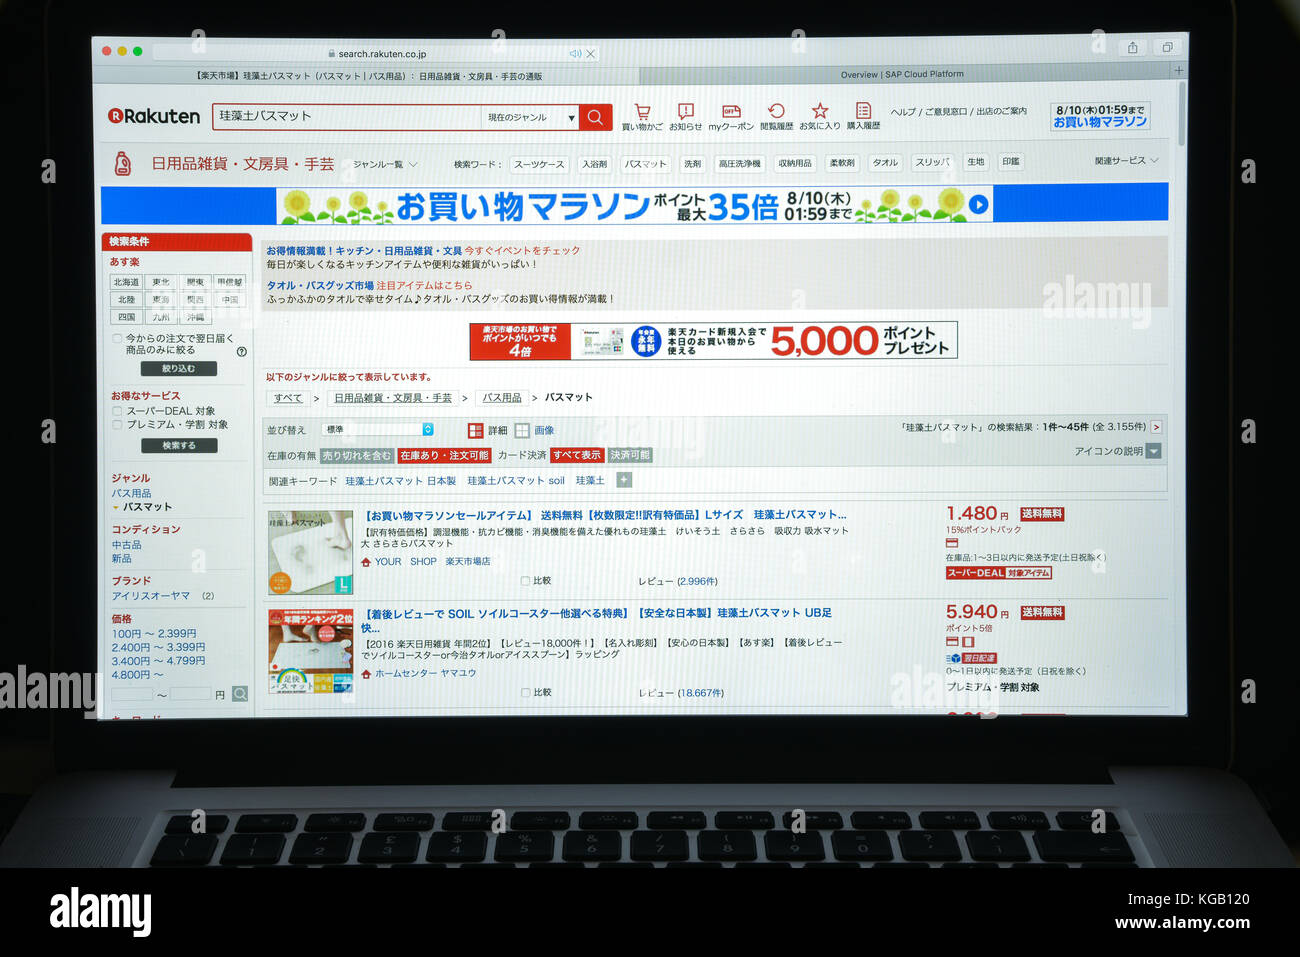 Milano, Italia - 10 agosto 2017: rakuten website homepage. è un giapponese di commercio elettronico e di internet azienda con sede in Tokyo. rakuten visib logo Foto Stock